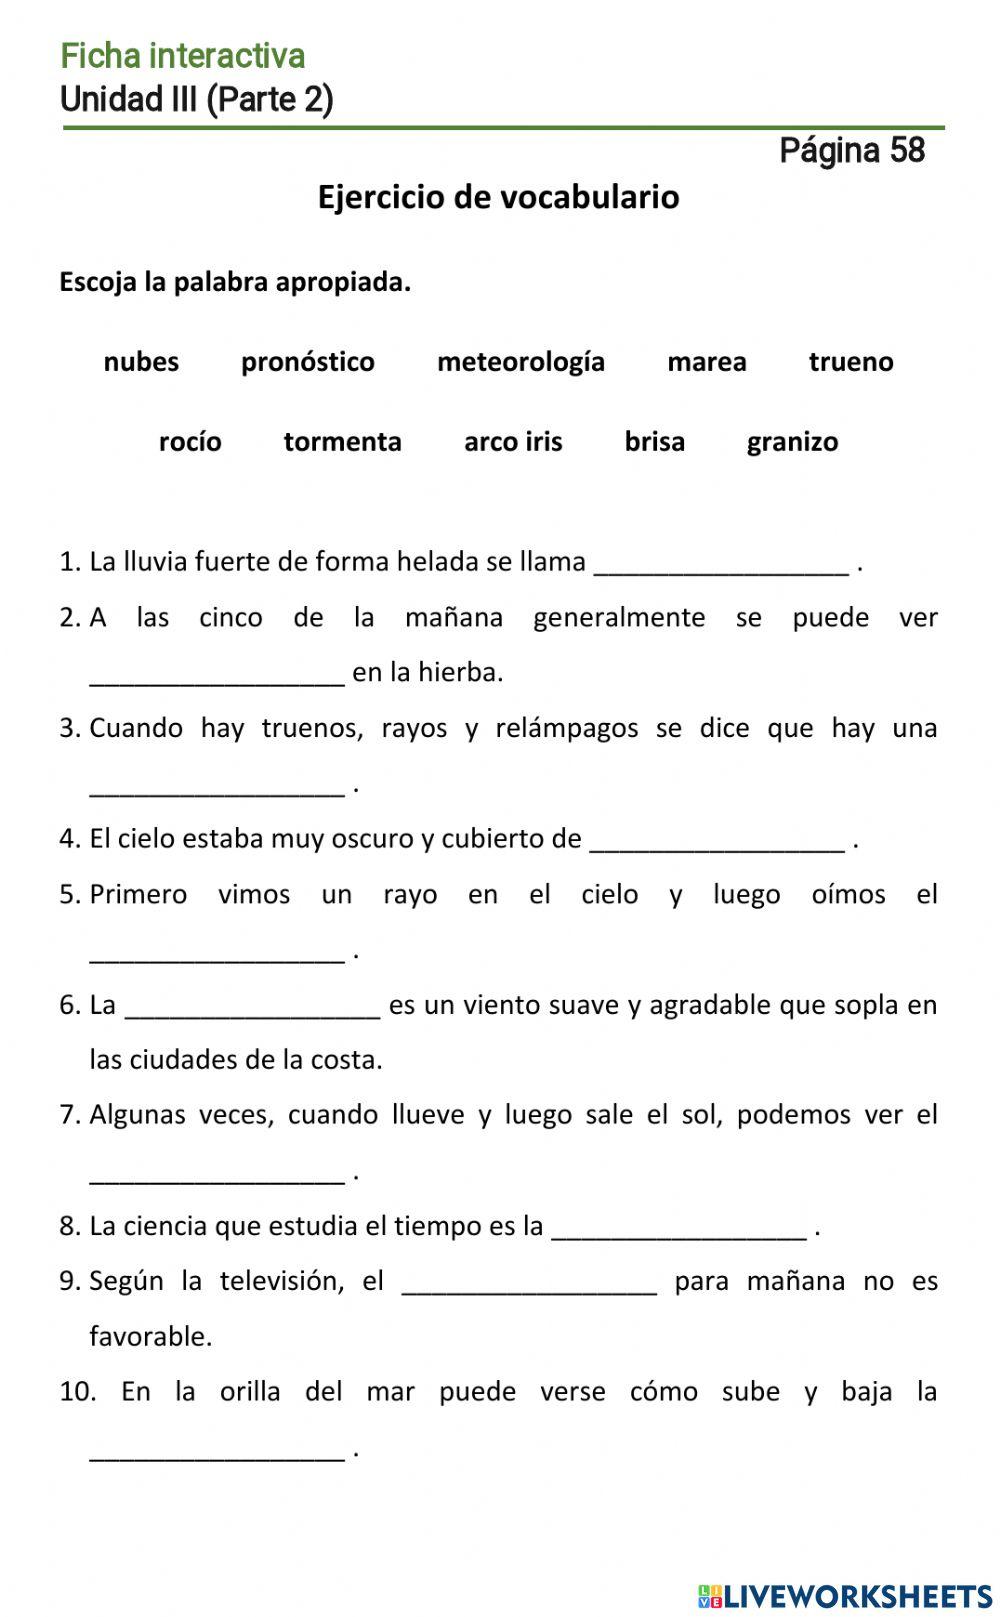 Español-9 (повыш.)-Parte 2-Unidad III-Lección 1-Página 58